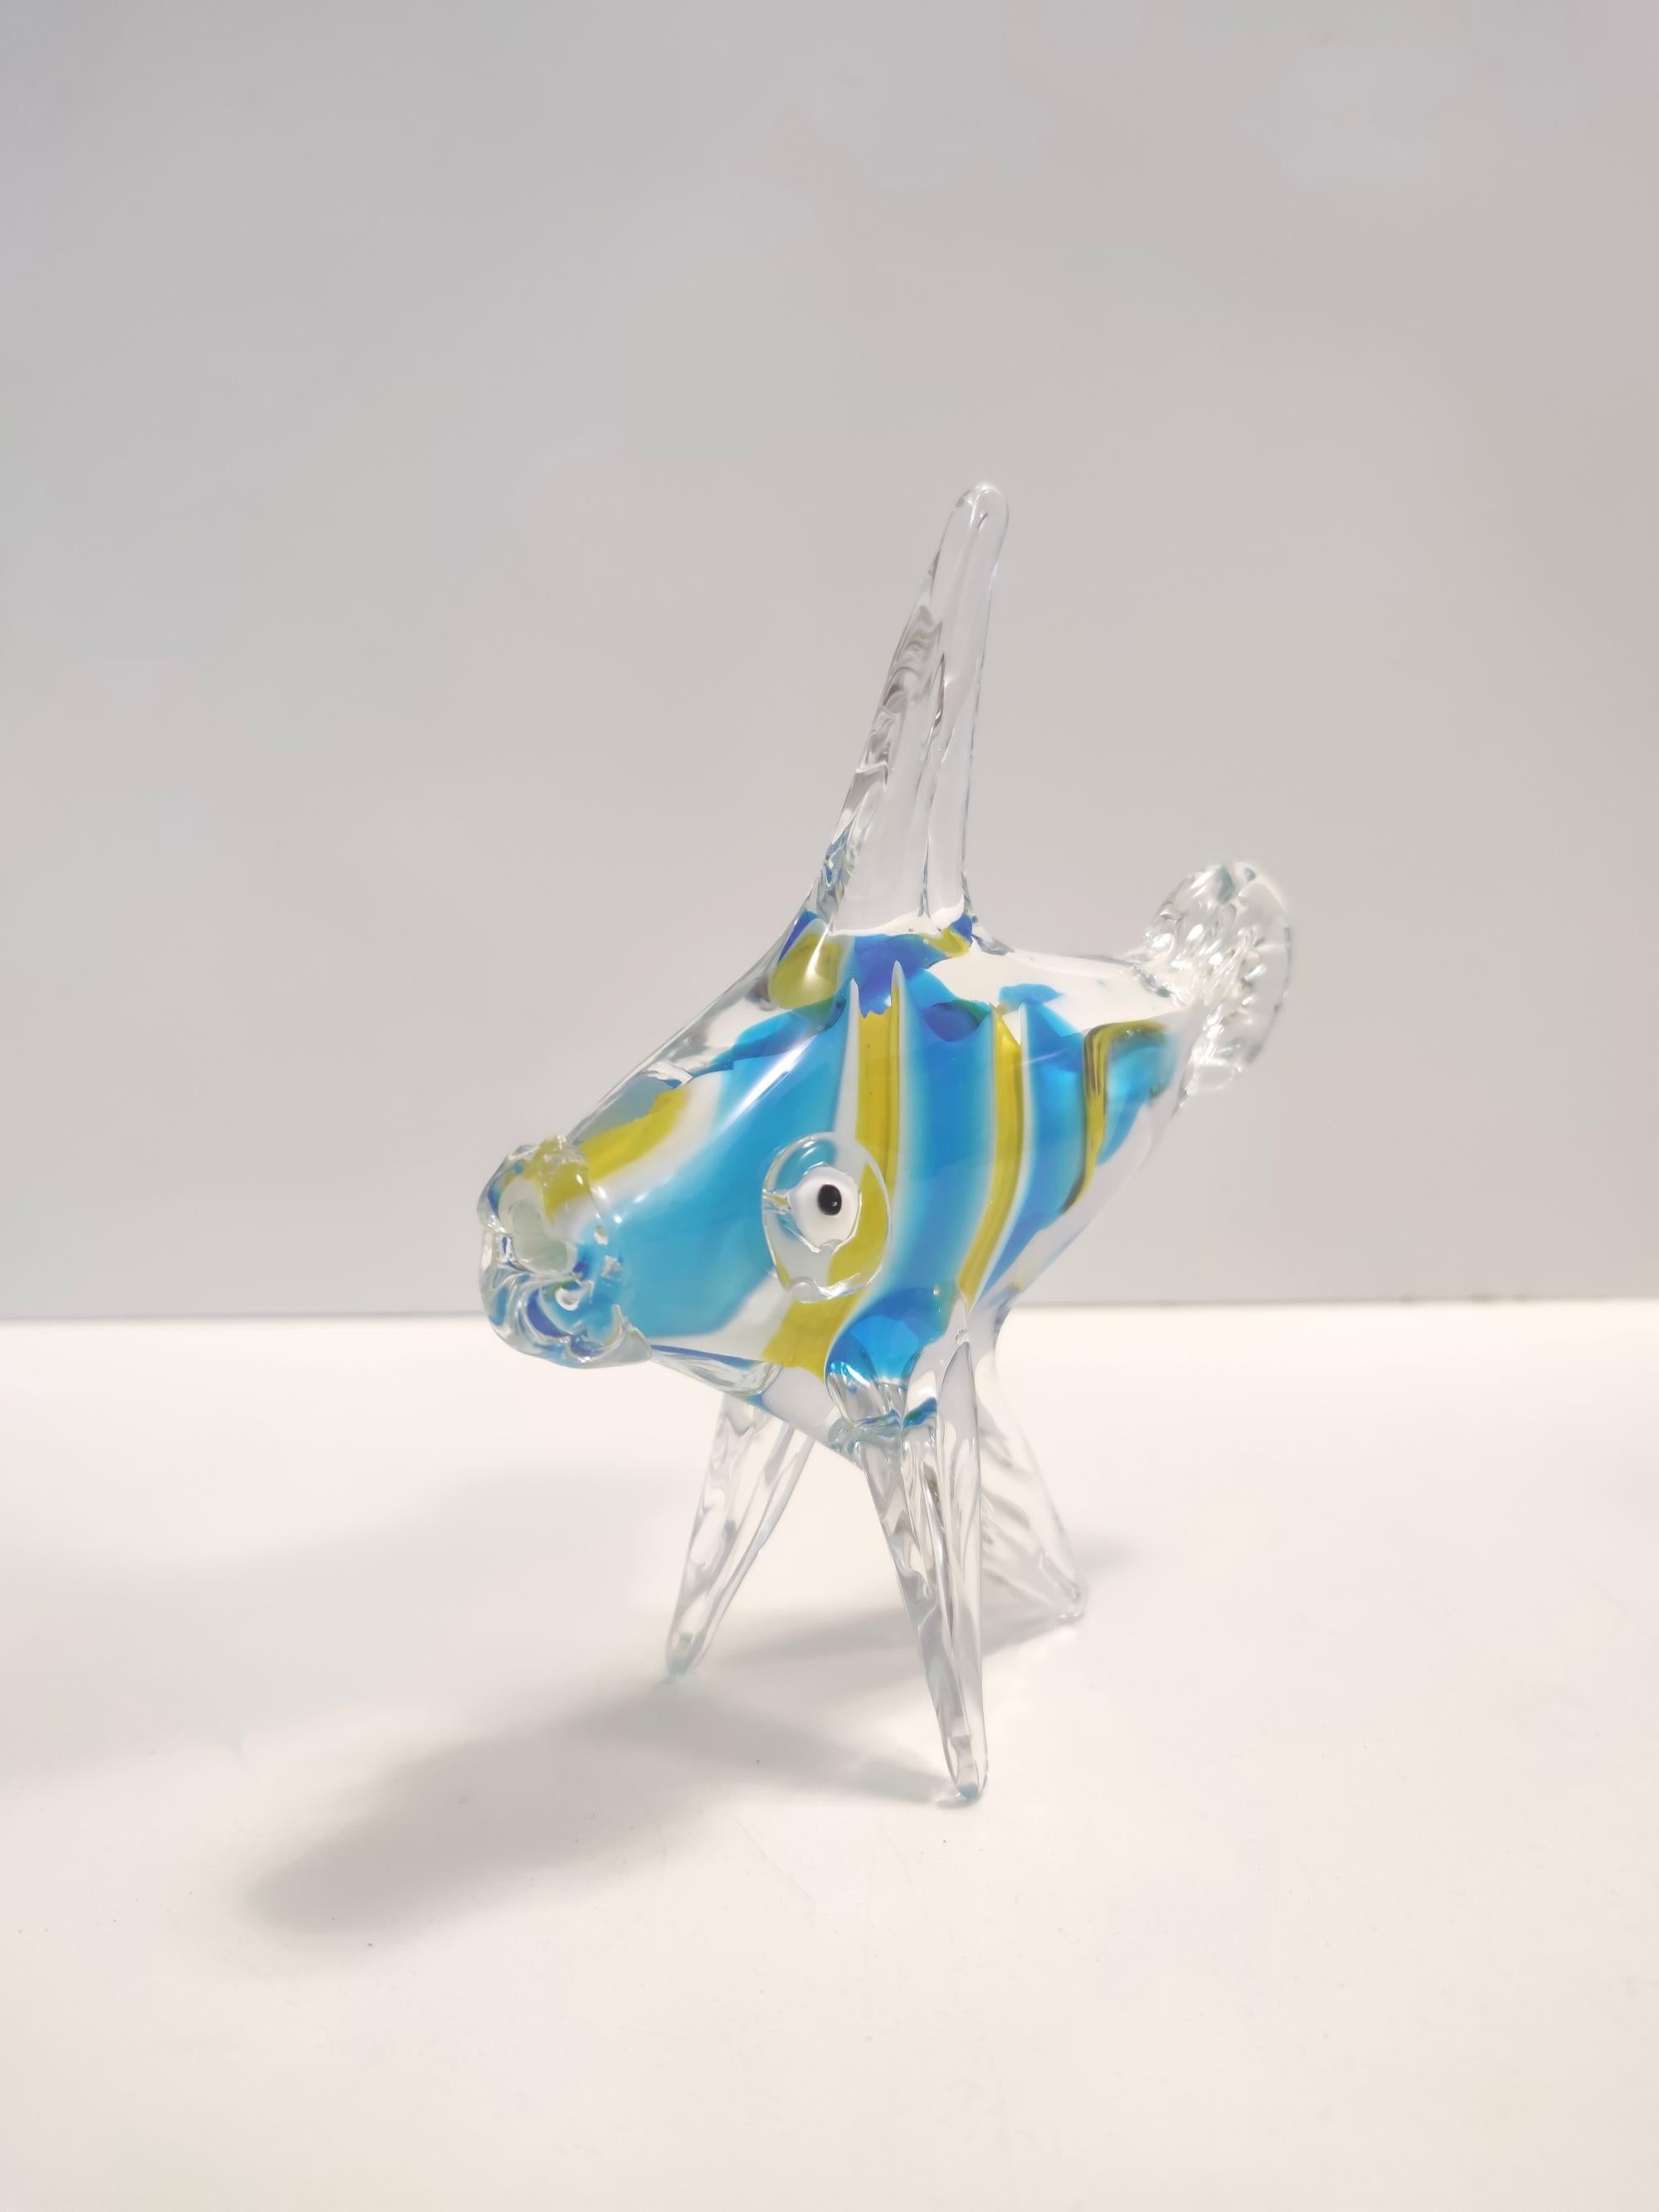 Murano, Italien, 1950er Jahre. 
Dieser Fisch ist aus mundgeblasenem Murano-Glas gefertigt.
Da es sich um ein Vintage-Stück handelt, kann es leichte Gebrauchsspuren aufweisen, aber es ist in einem ausgezeichneten Originalzustand und bereit, ein Stück